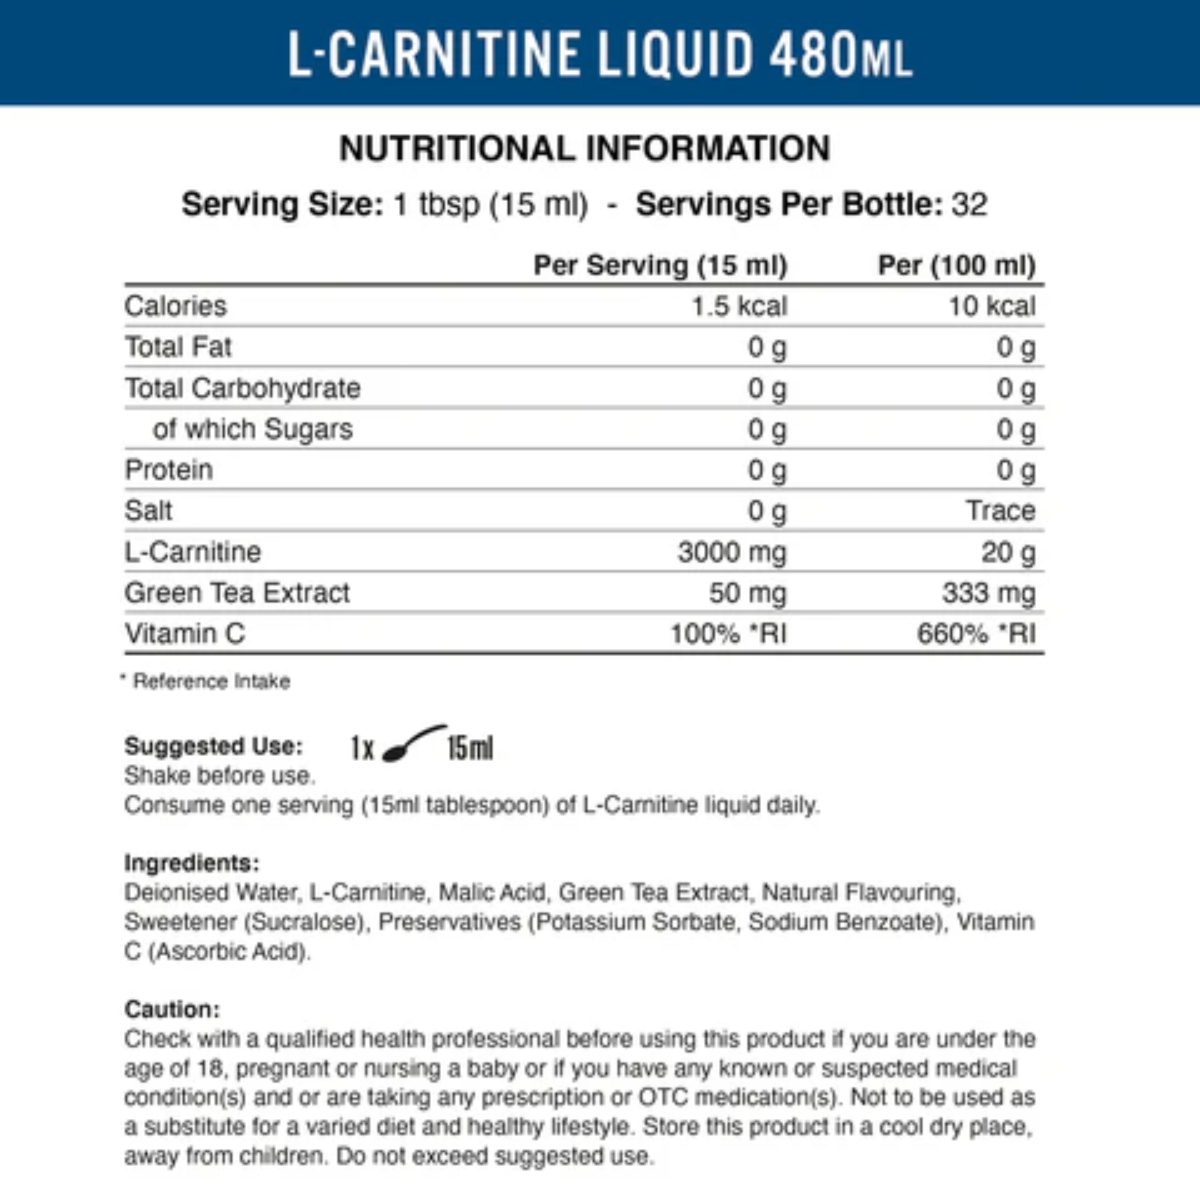 Applied Liquid L-Carnitine 3000 | Muscle Freak